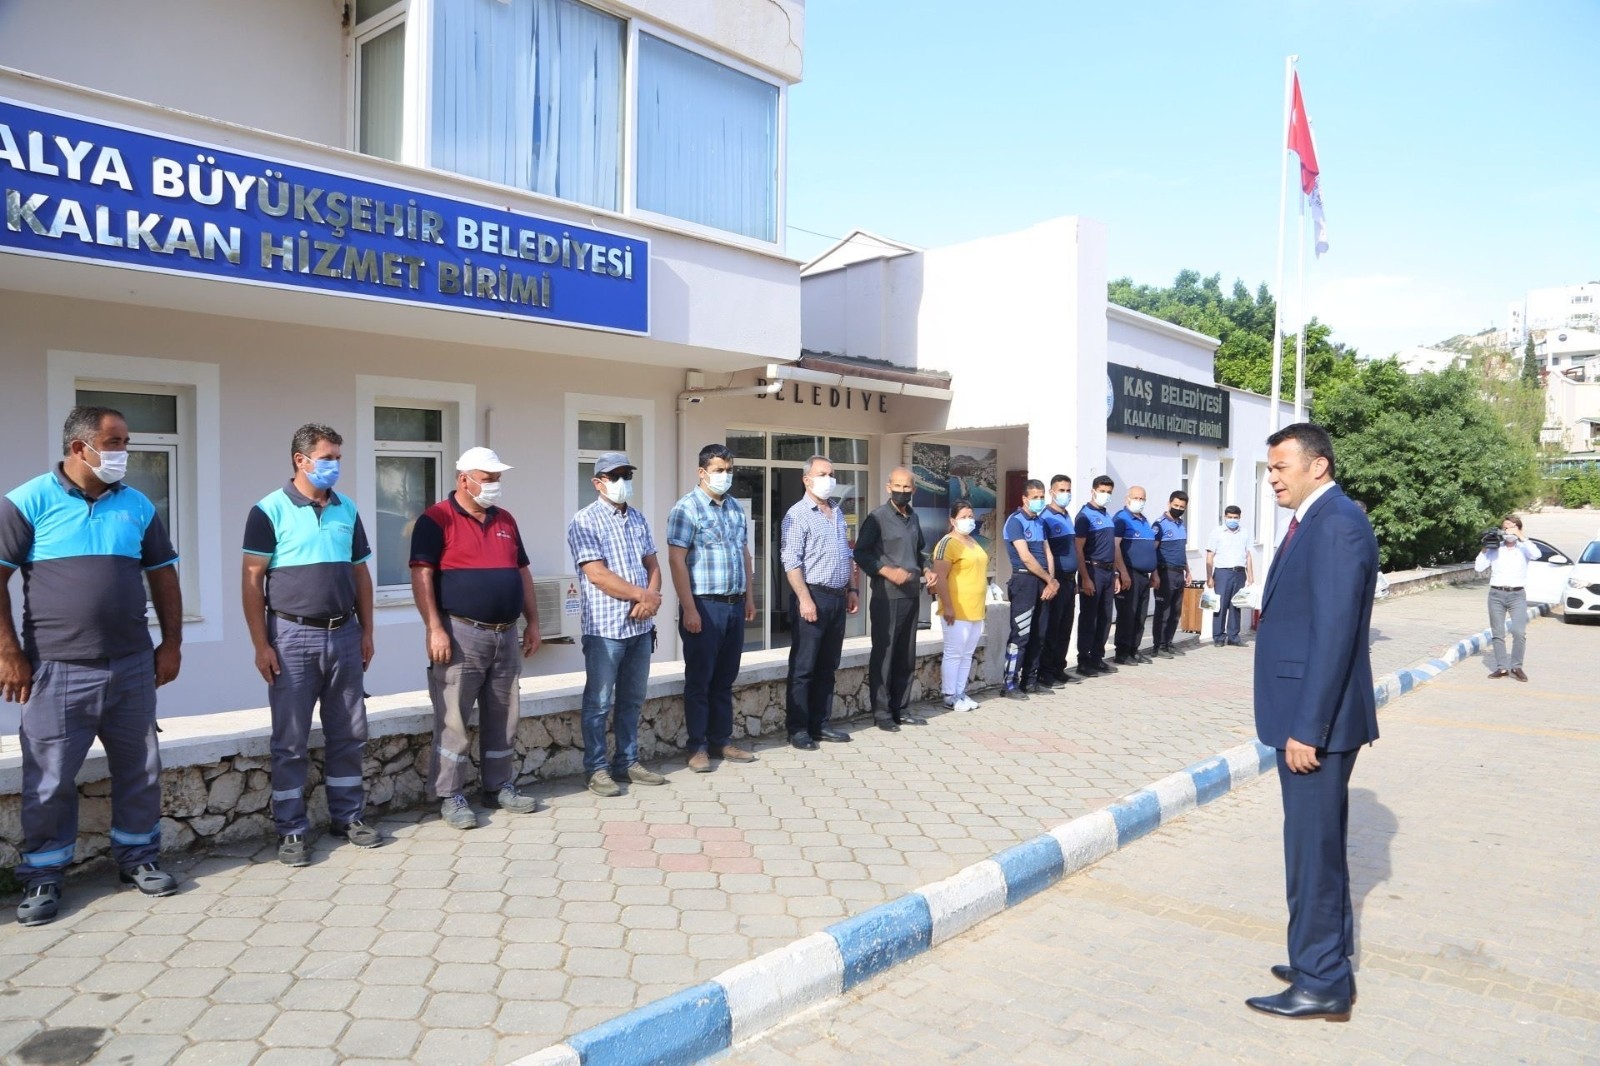 Kaş Belediye Başkanı Mutlu Ulutaş, Ramazan Bayramı öncesi personeliyle bayramlaştı.